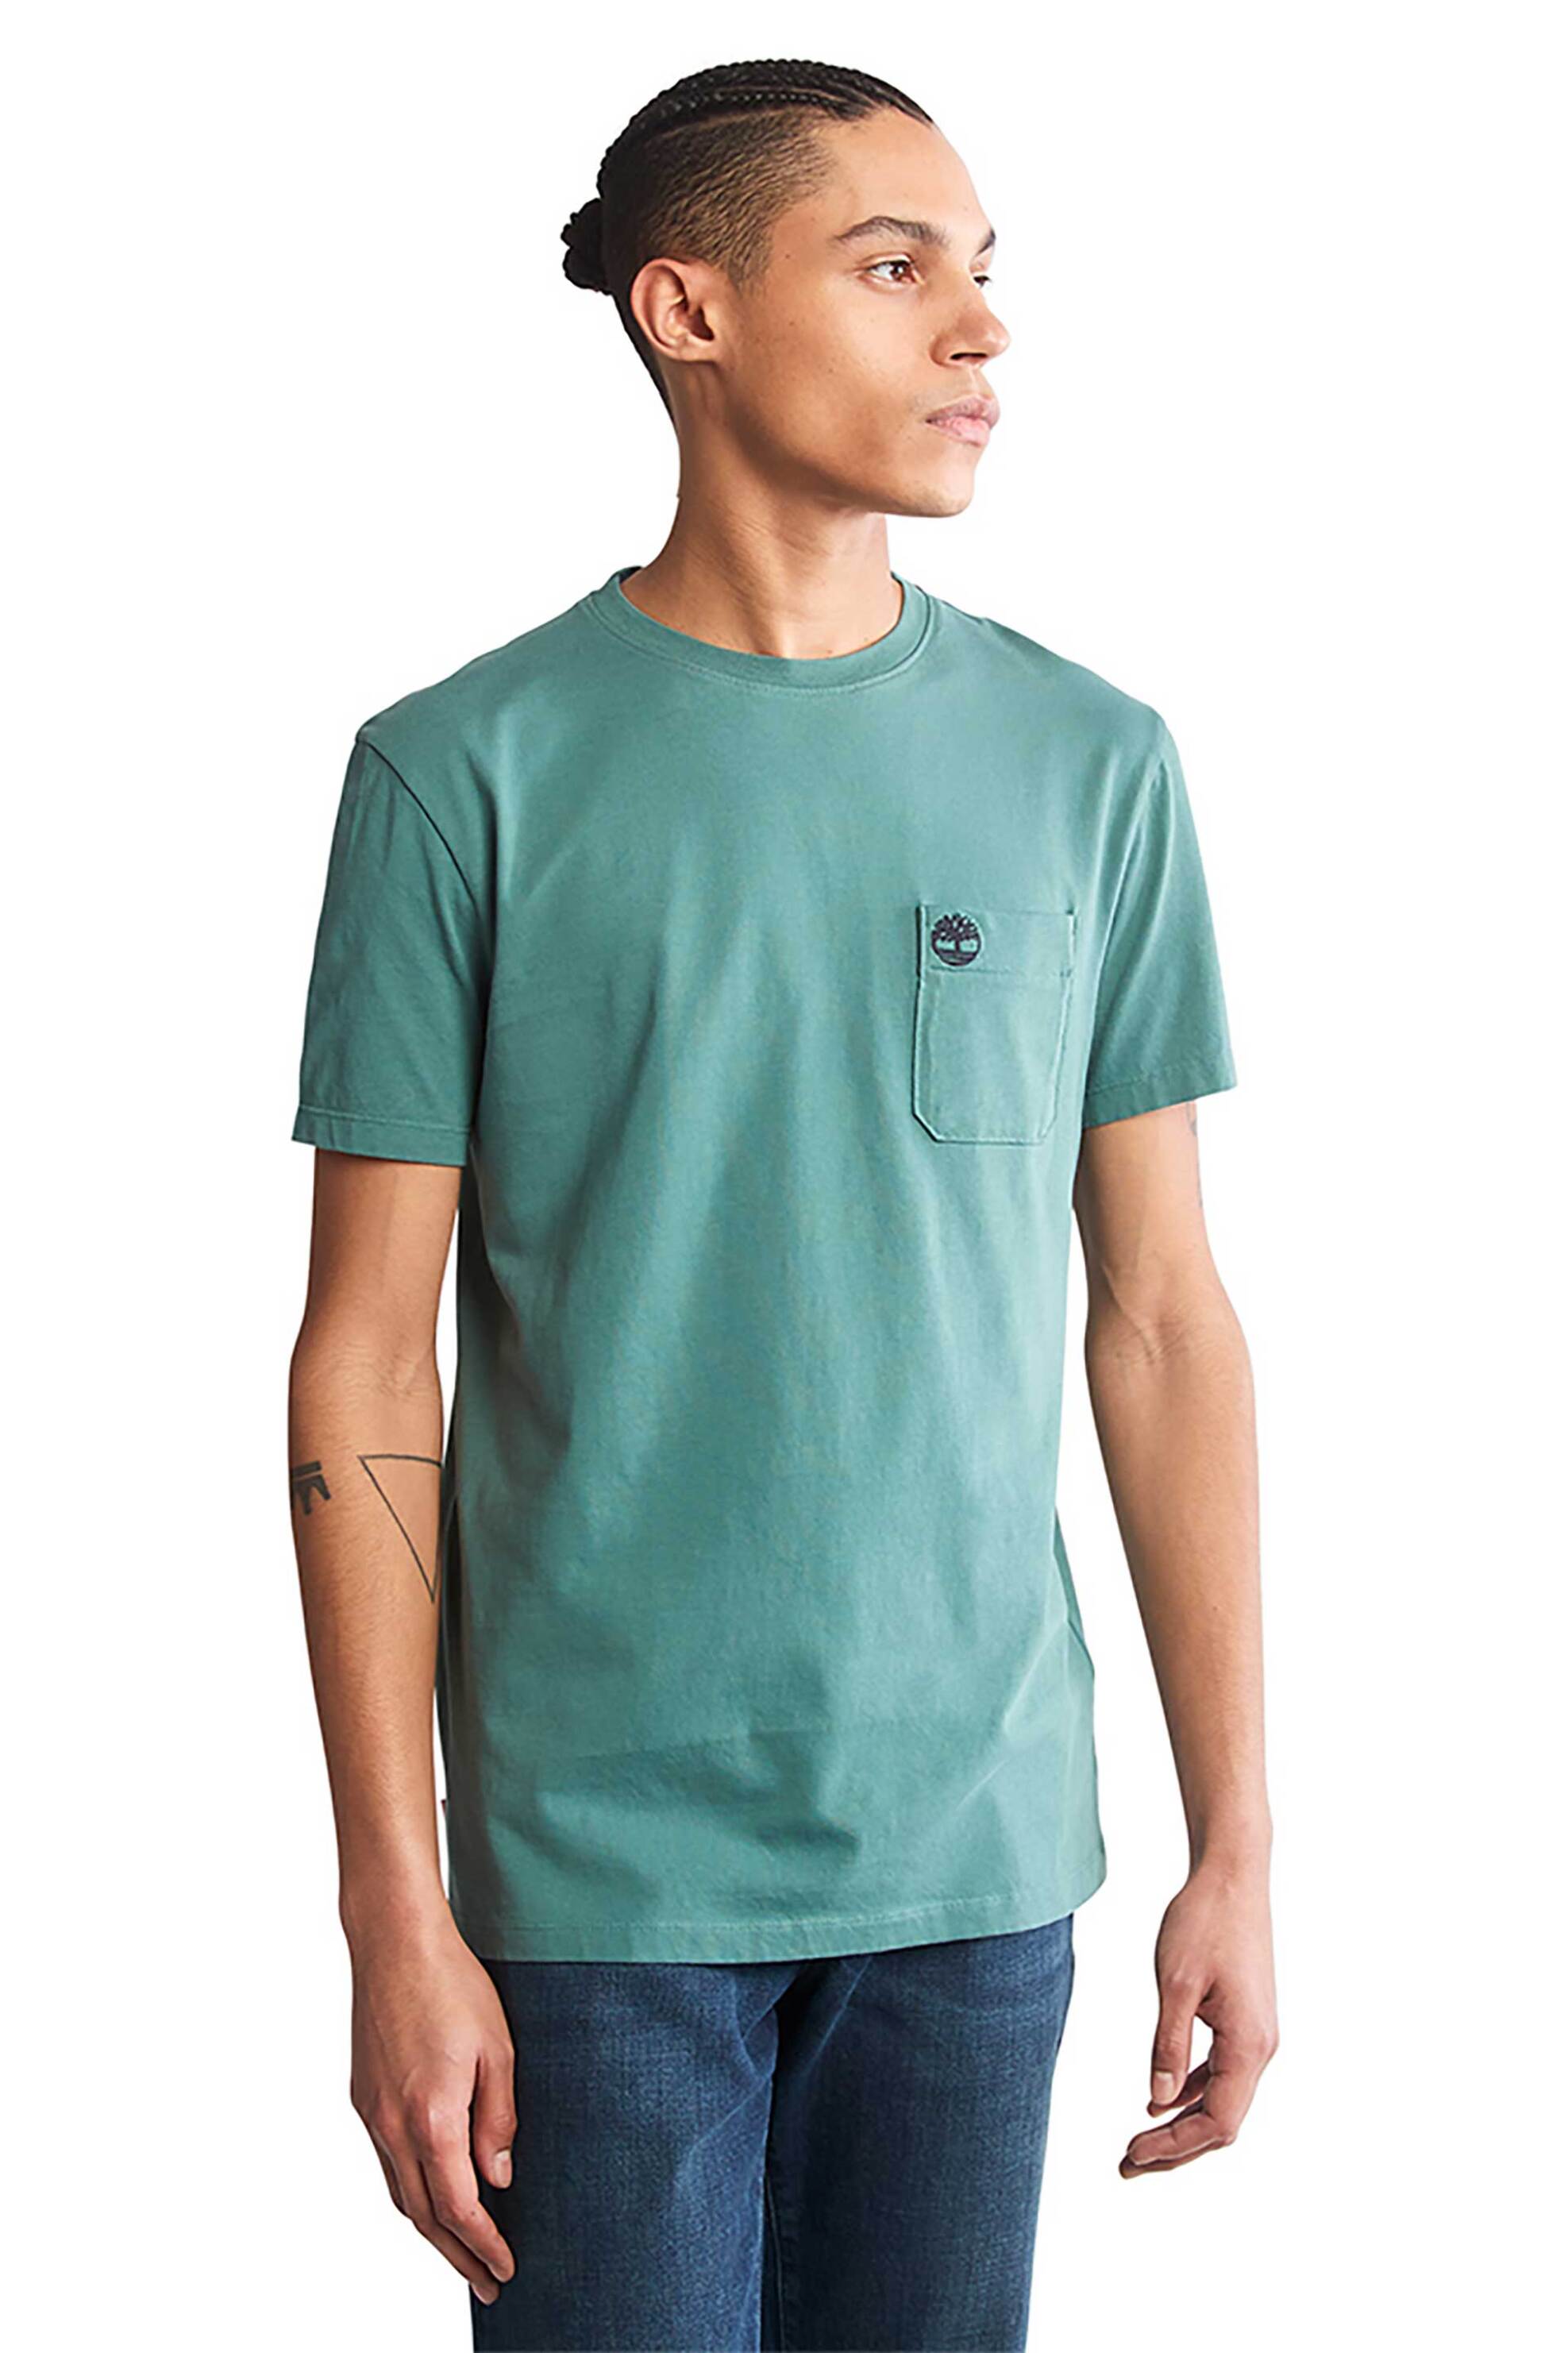 Ανδρική Μόδα > Ανδρικά Ρούχα > Ανδρικές Μπλούζες > Ανδρικά T-Shirts Timberland ανδρικό T-shirt με τσέπη Slim Fit "Ss Dunstan River" - TB0A2CQYCL61 Πράσινο